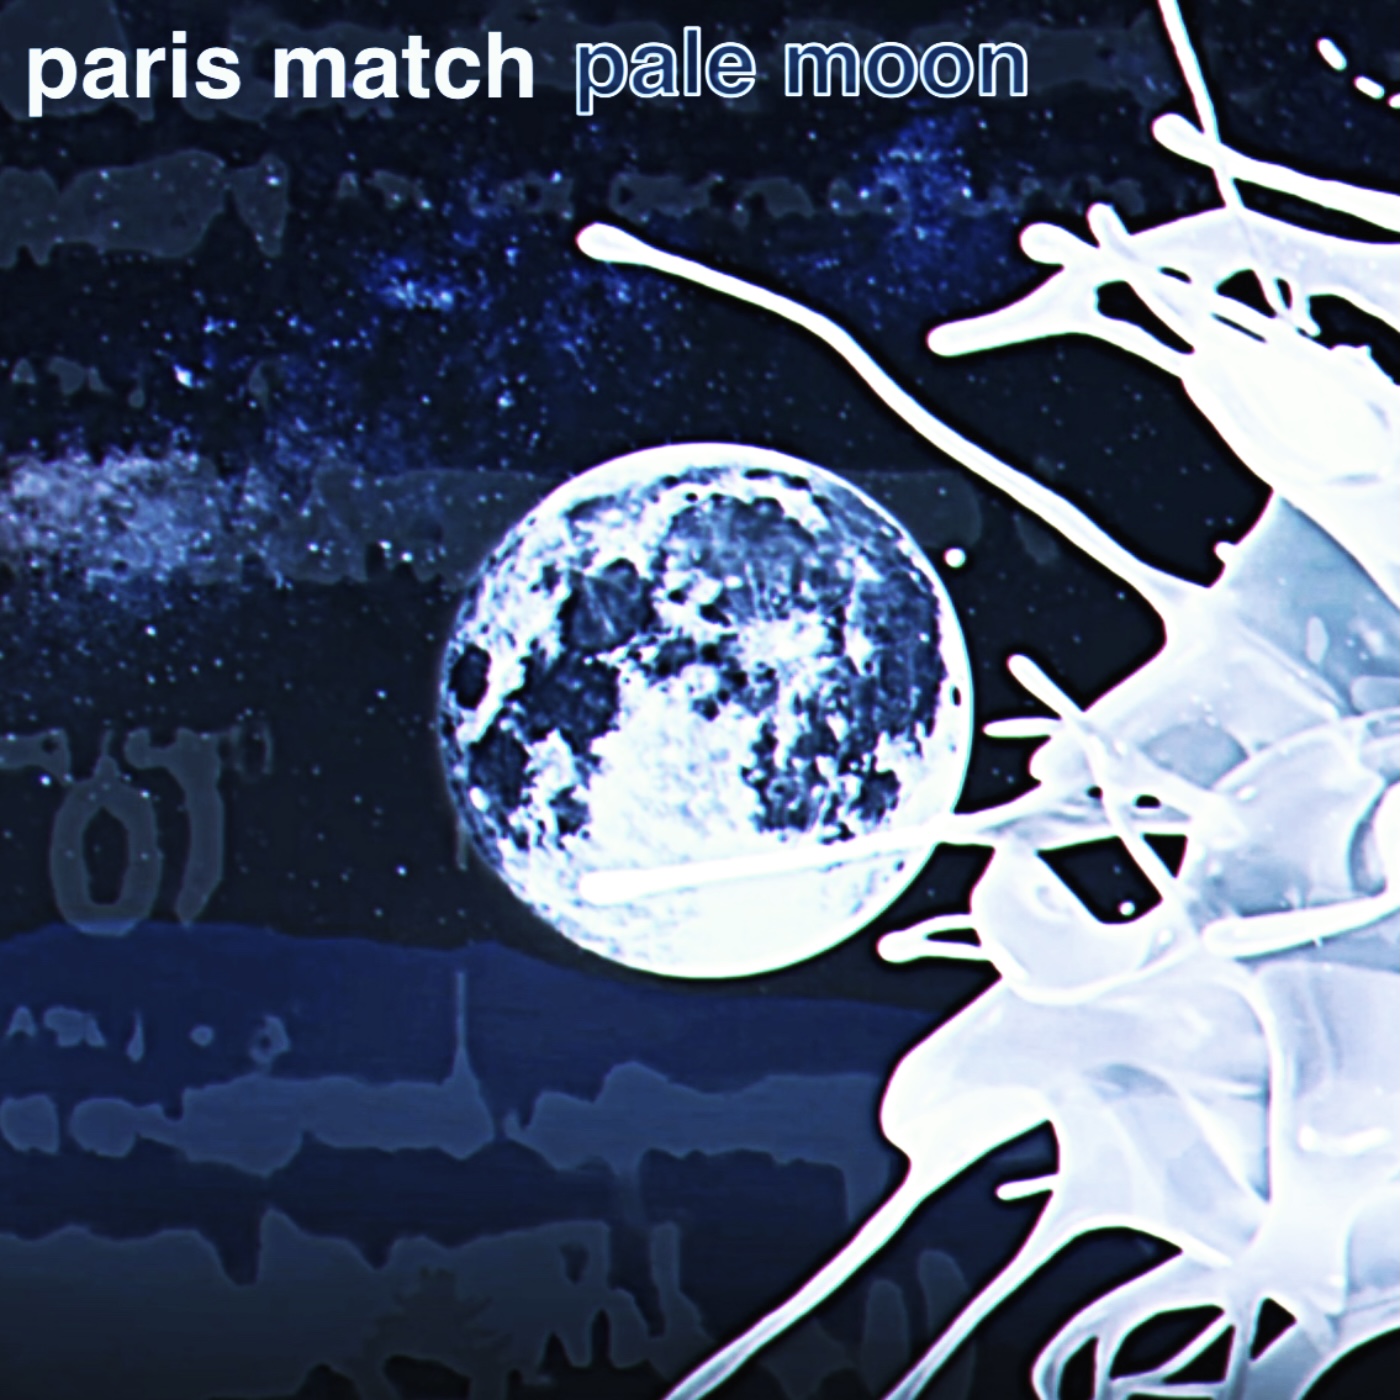 paris match、15年ぶりのカバーアルバム「OUR FAVOURITE POP Ⅱ 〜TOKYO STYLE〜」11/23発売  収録曲「PALE MOON」先行配信も | Musicman